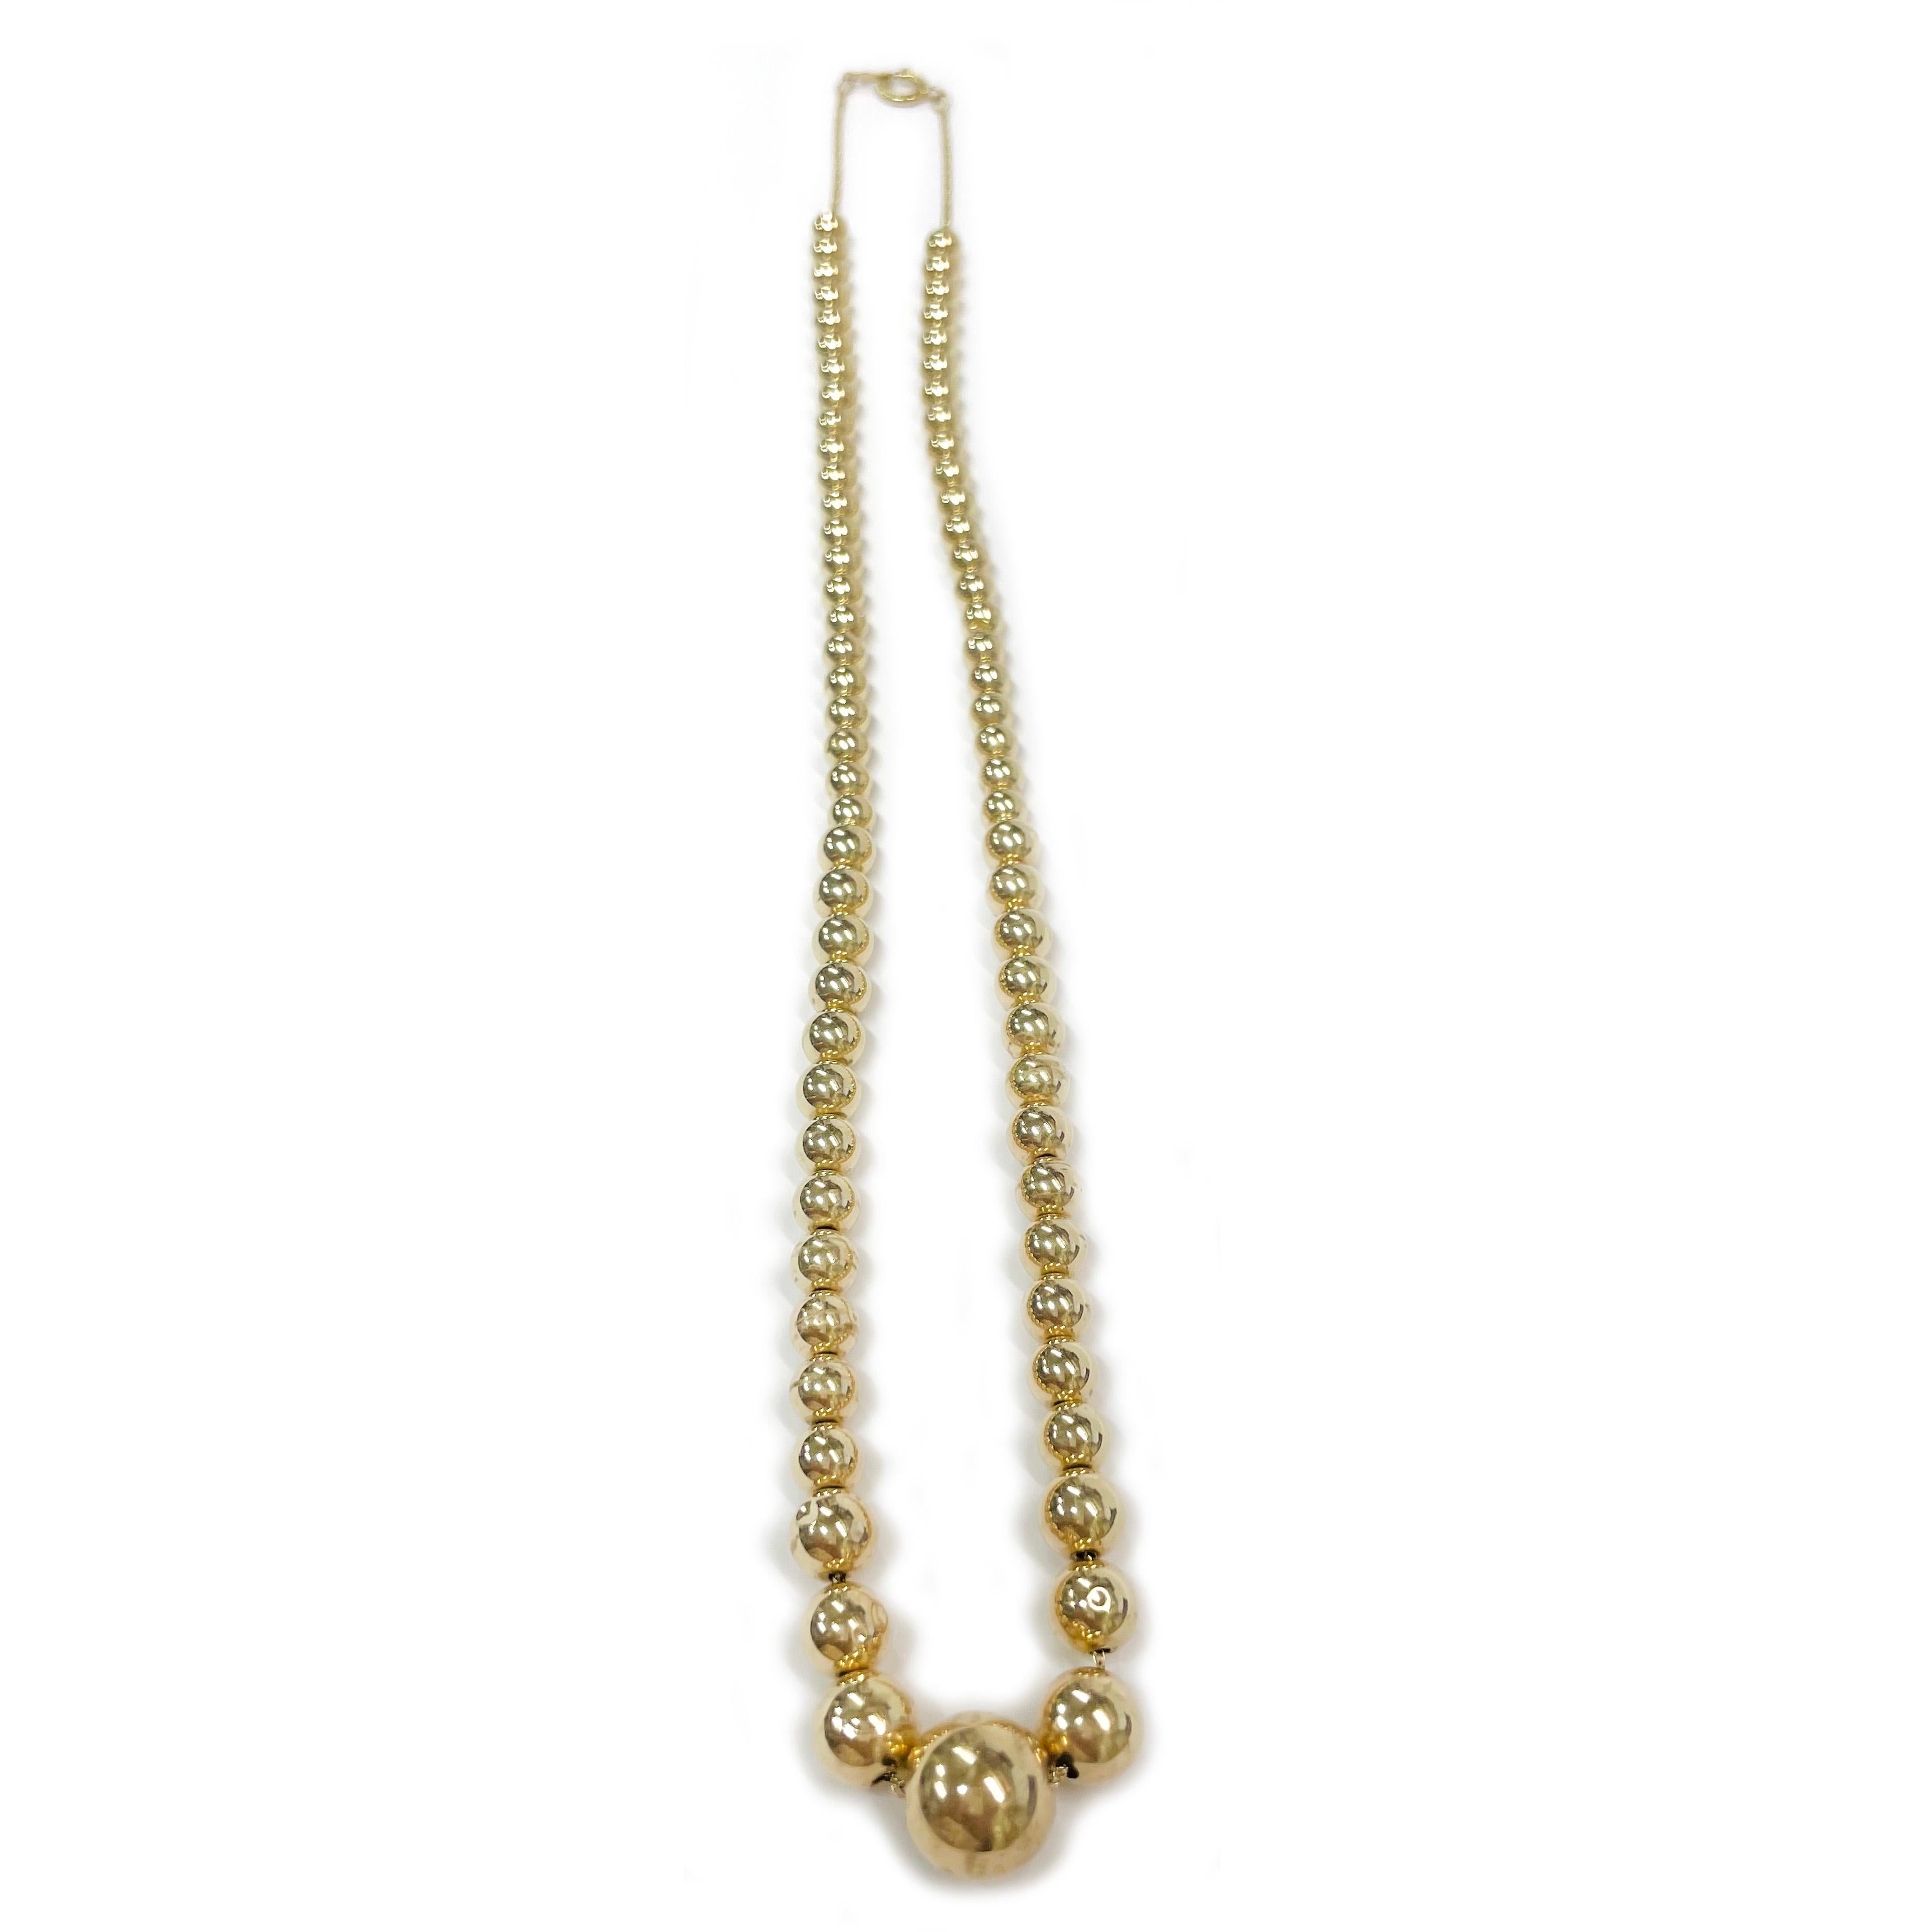 14 Karat Gelbgold hohle Perlenkette. Die Halskette besteht aus einem einzigen Strang mit vierundsiebzig hohlen, runden Perlen aus Gelbgold. Die Größe der Perlen reicht von 4,85 bis 11 mm. Die Perlen hängen an einer Gliederkette aus 14 Karat Gold.